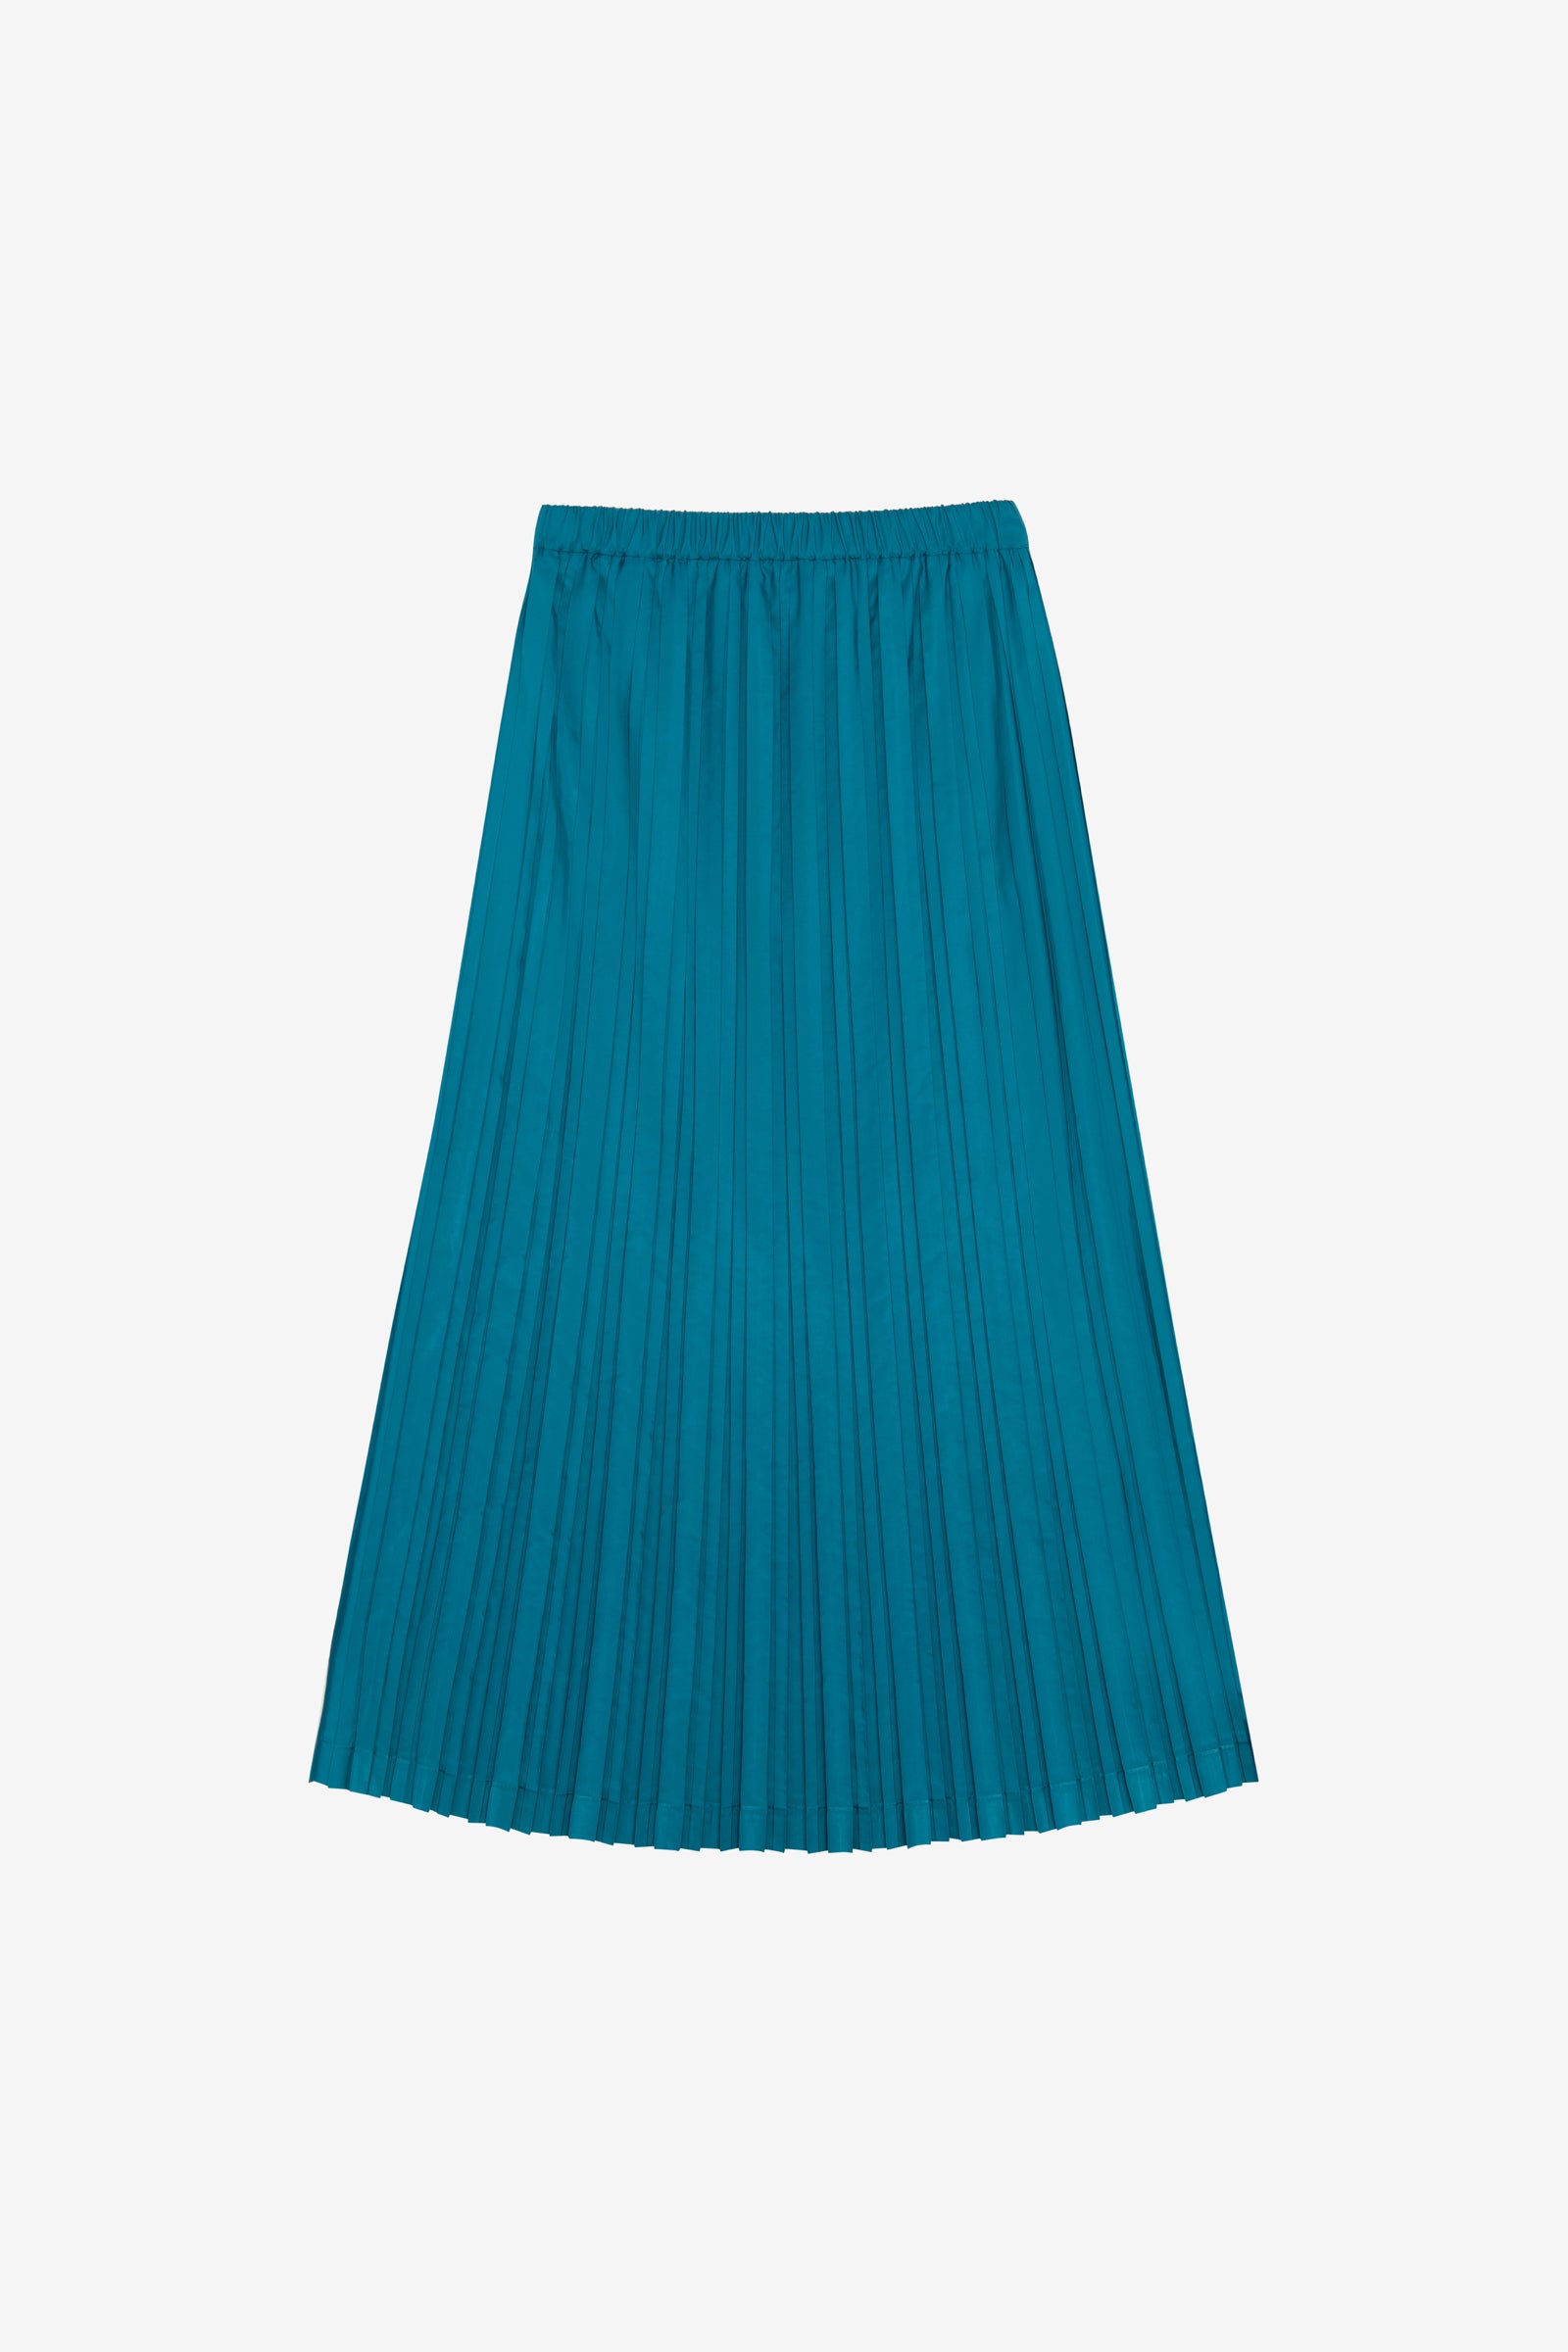 Teal Blue Pleated Skirt